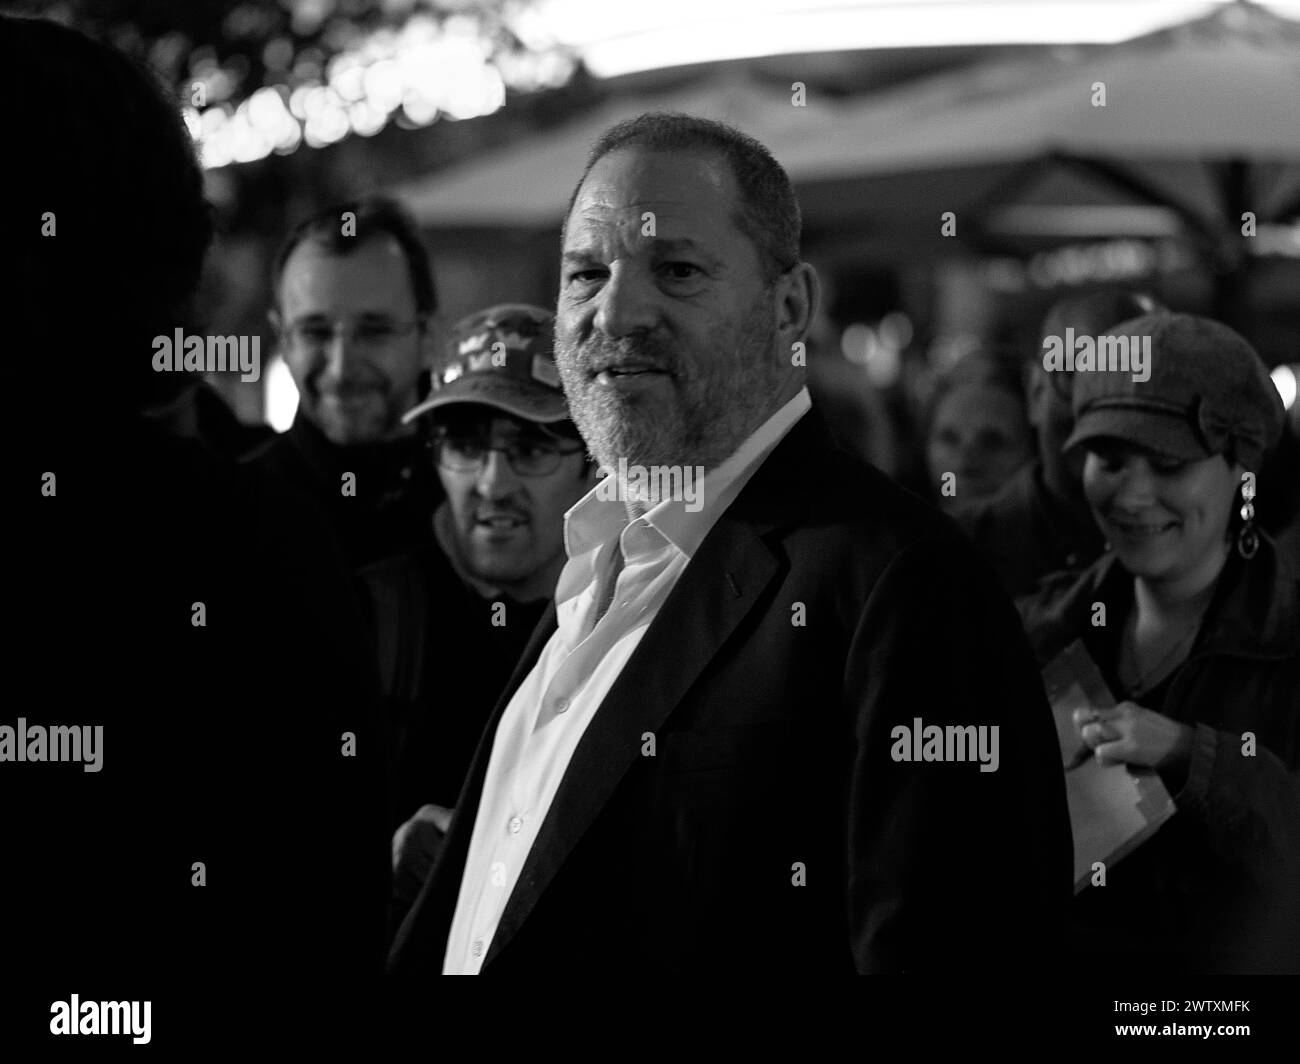 Zurigo / Svizzera, 22 settembre 2016. Il produttore Harvey Weinstein al Zurich Film Festival è circondato dai fan. Crediti: Walter Gilgen Foto Stock